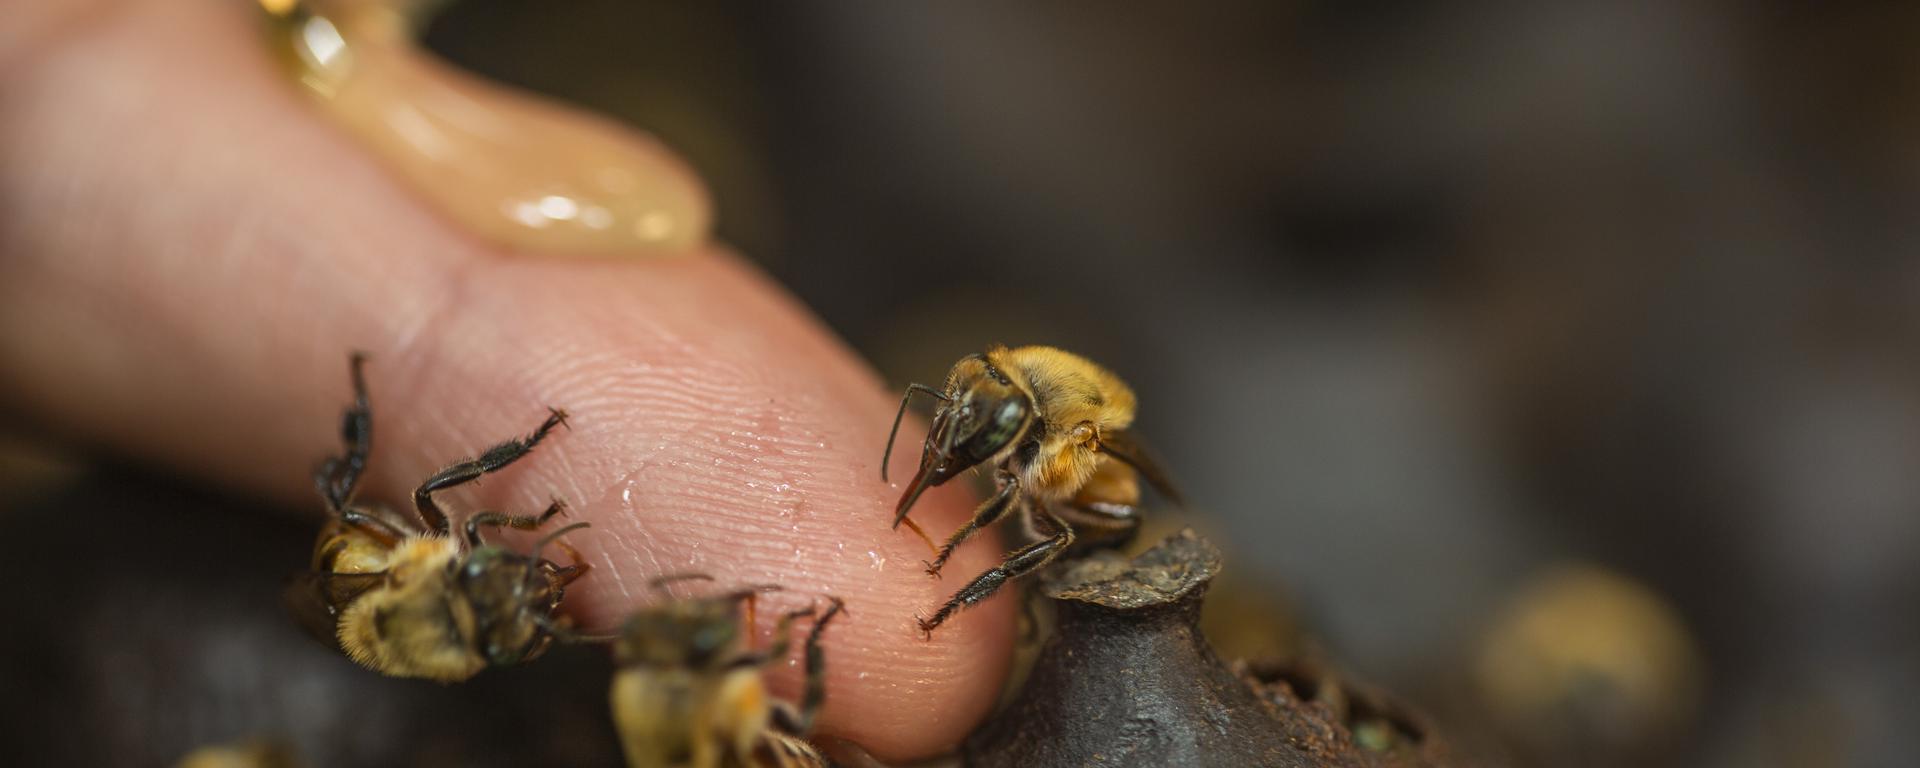 El mundo de las abejas, mucho más que miel y picaduras: ¿por qué cuidarlas es proteger el futuro?